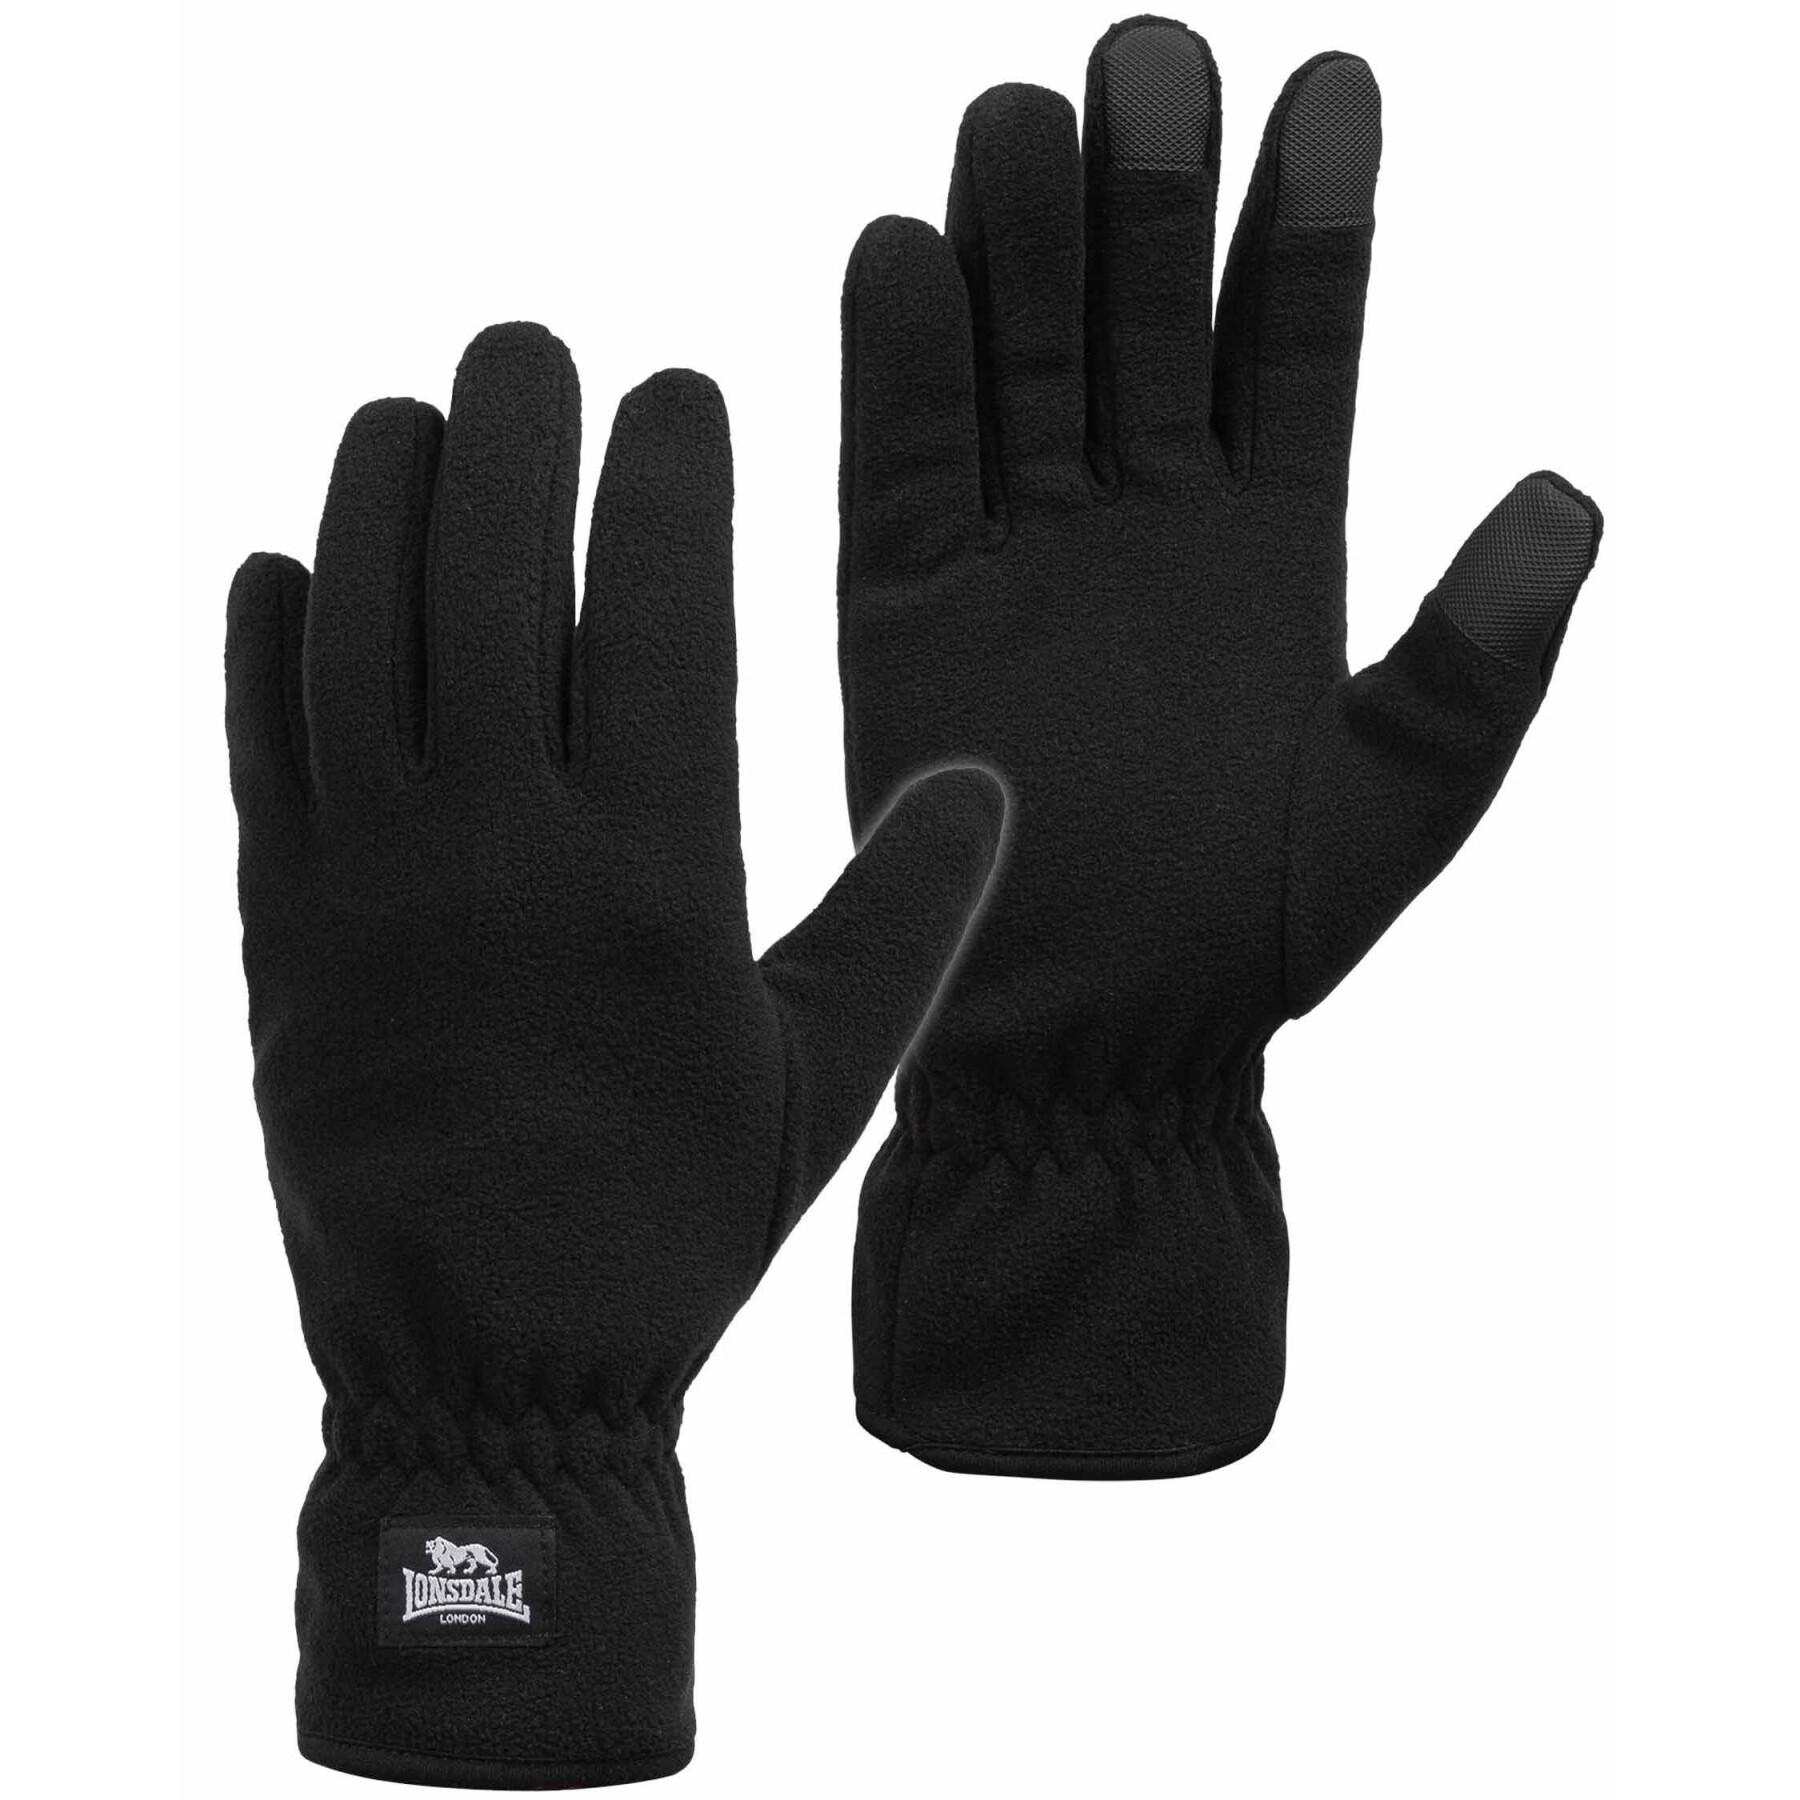 Schals - Lonsdale - - Accessoires Handschuhe & Mode-Accessoires Ayside Handschuhe